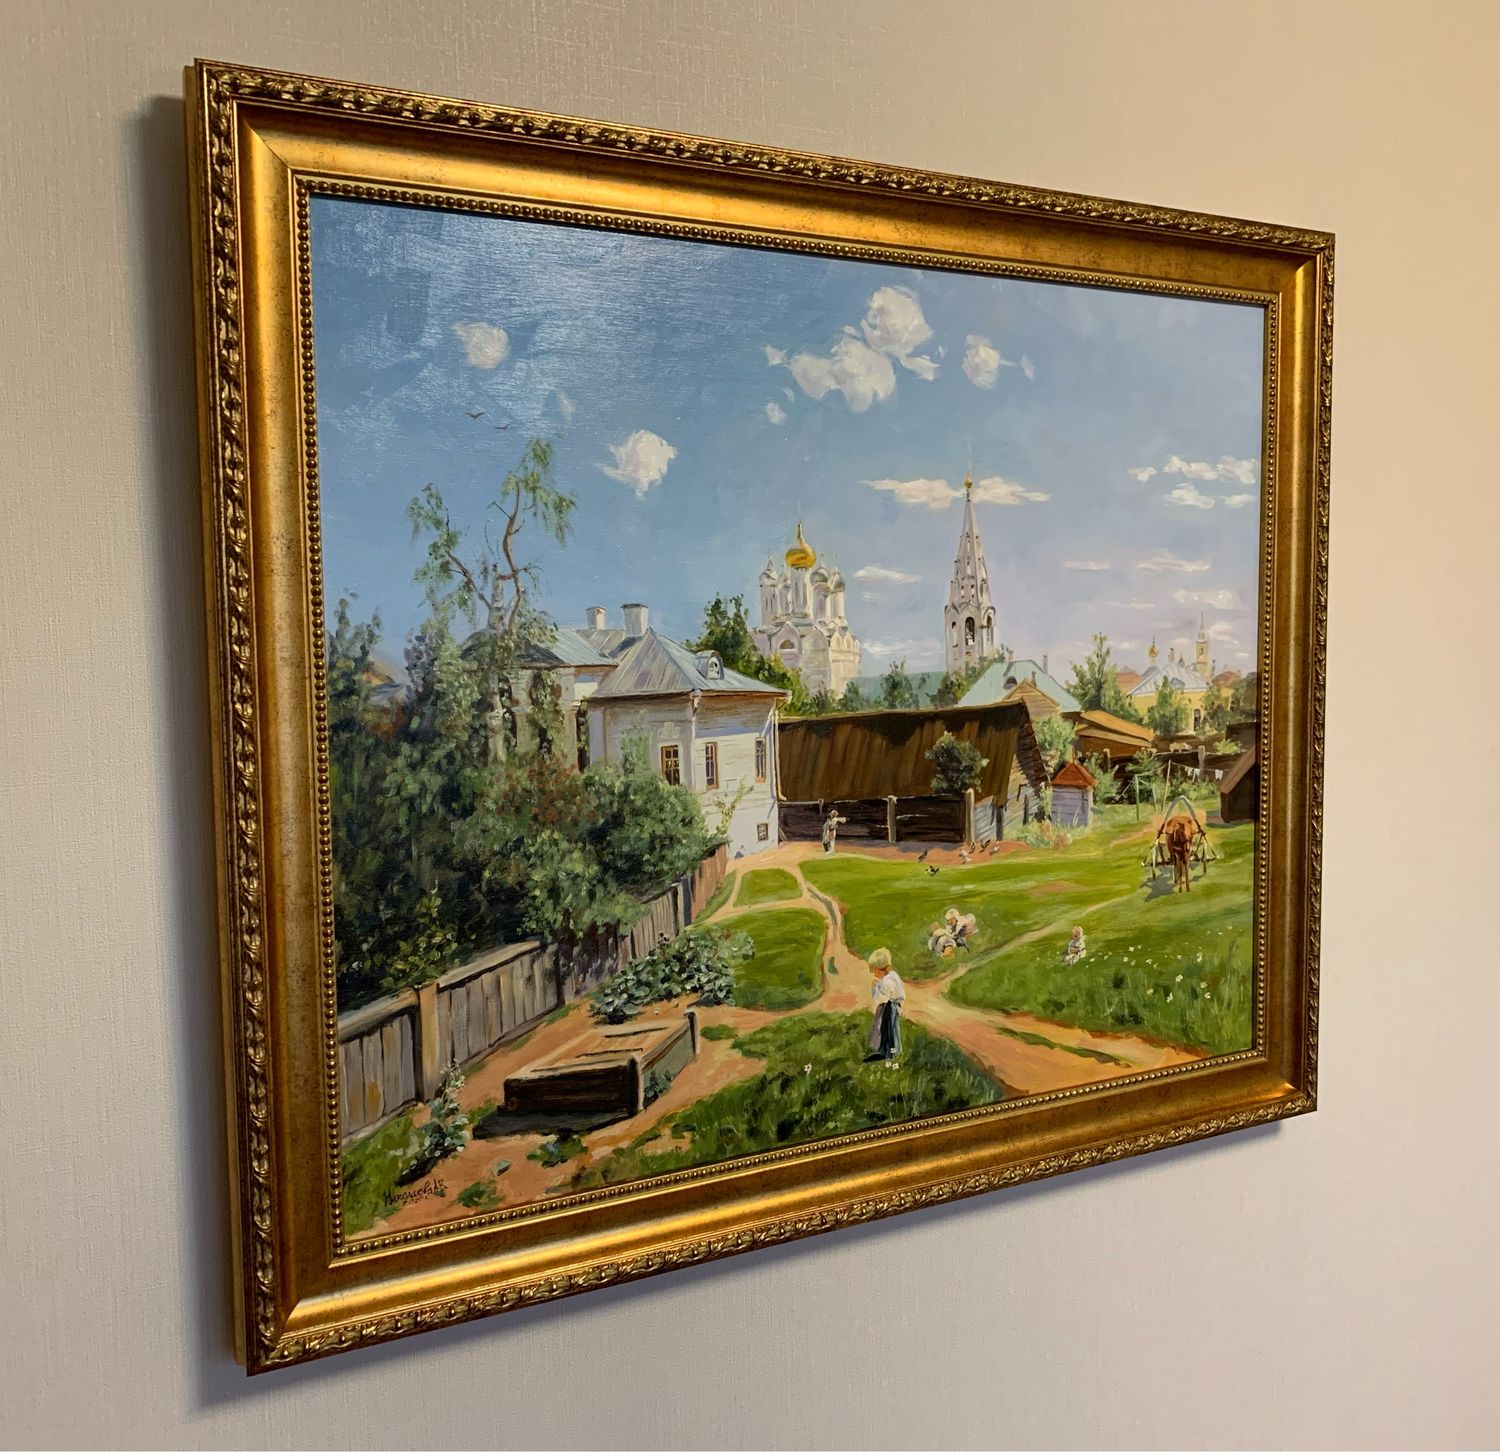 Московский дворик картина Поленова